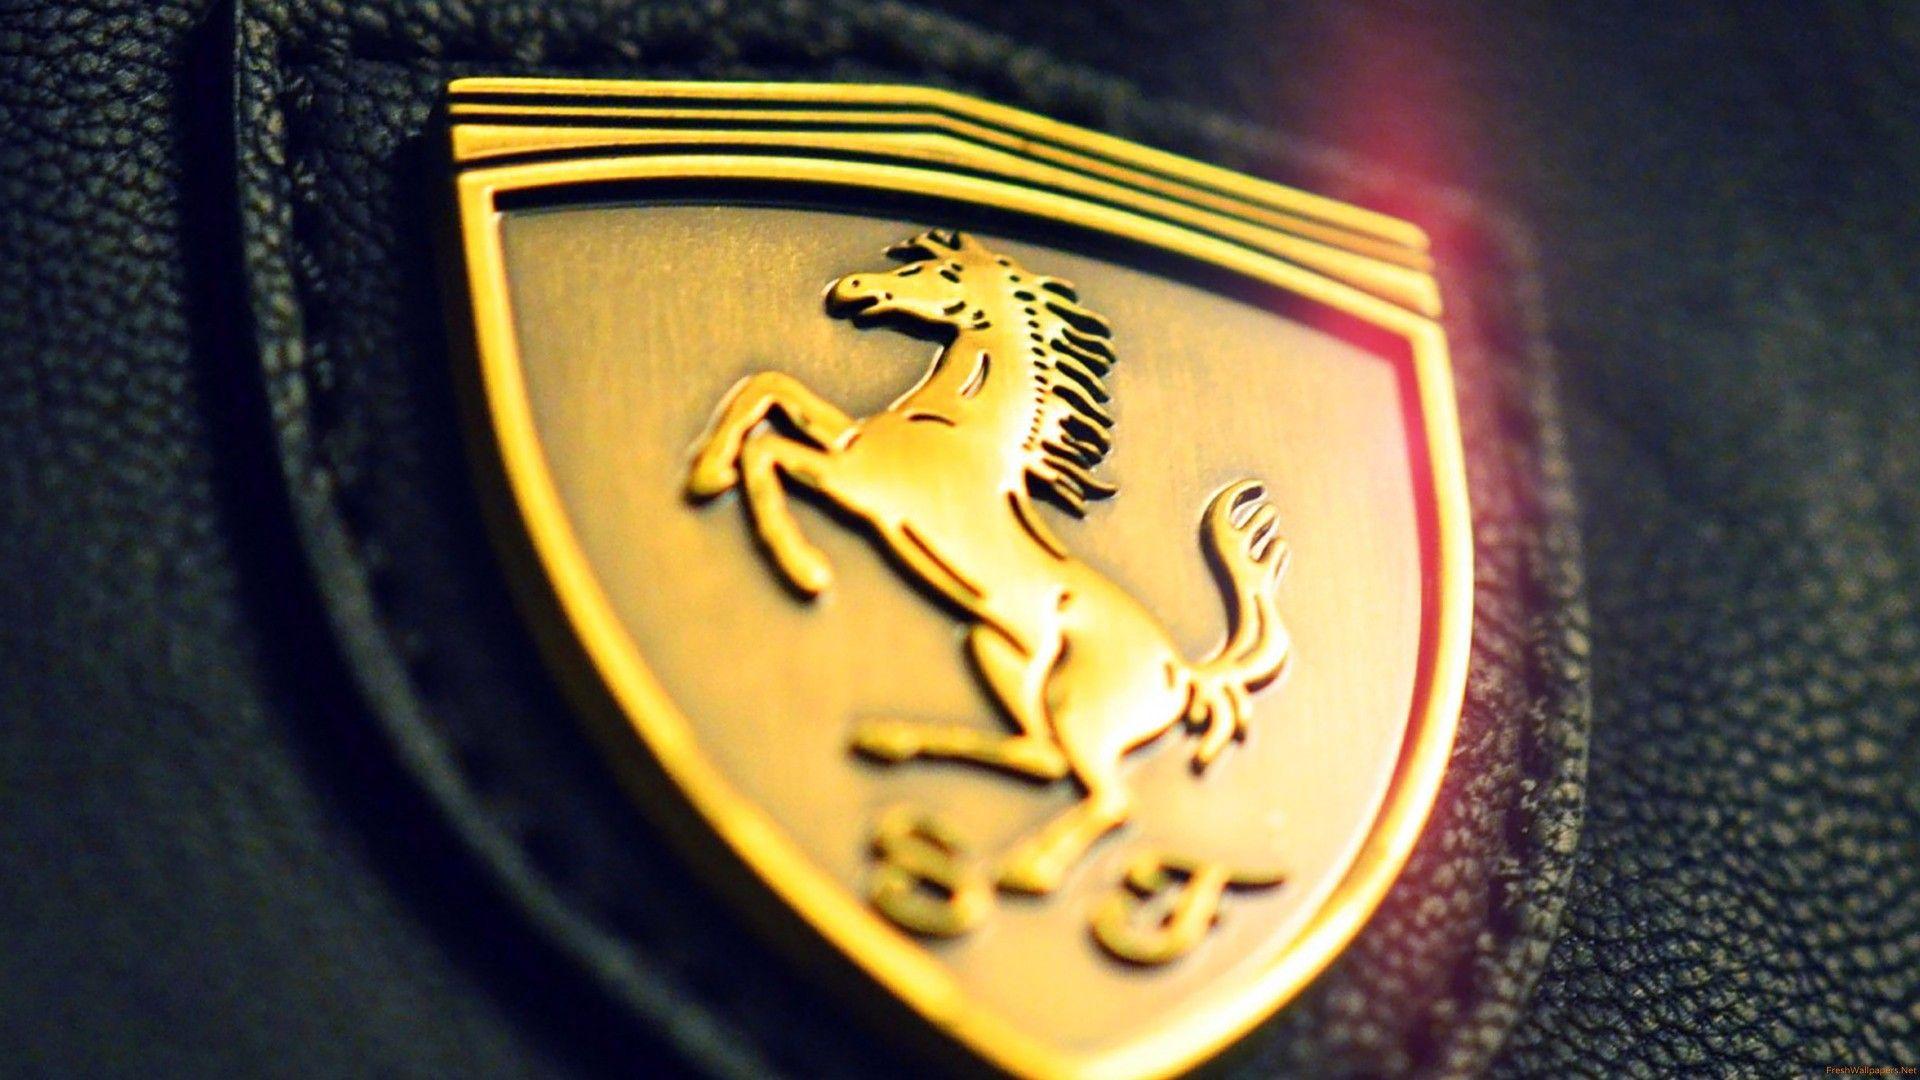 Ferrari Logo Wallpaper by GregKmk on DeviantArt